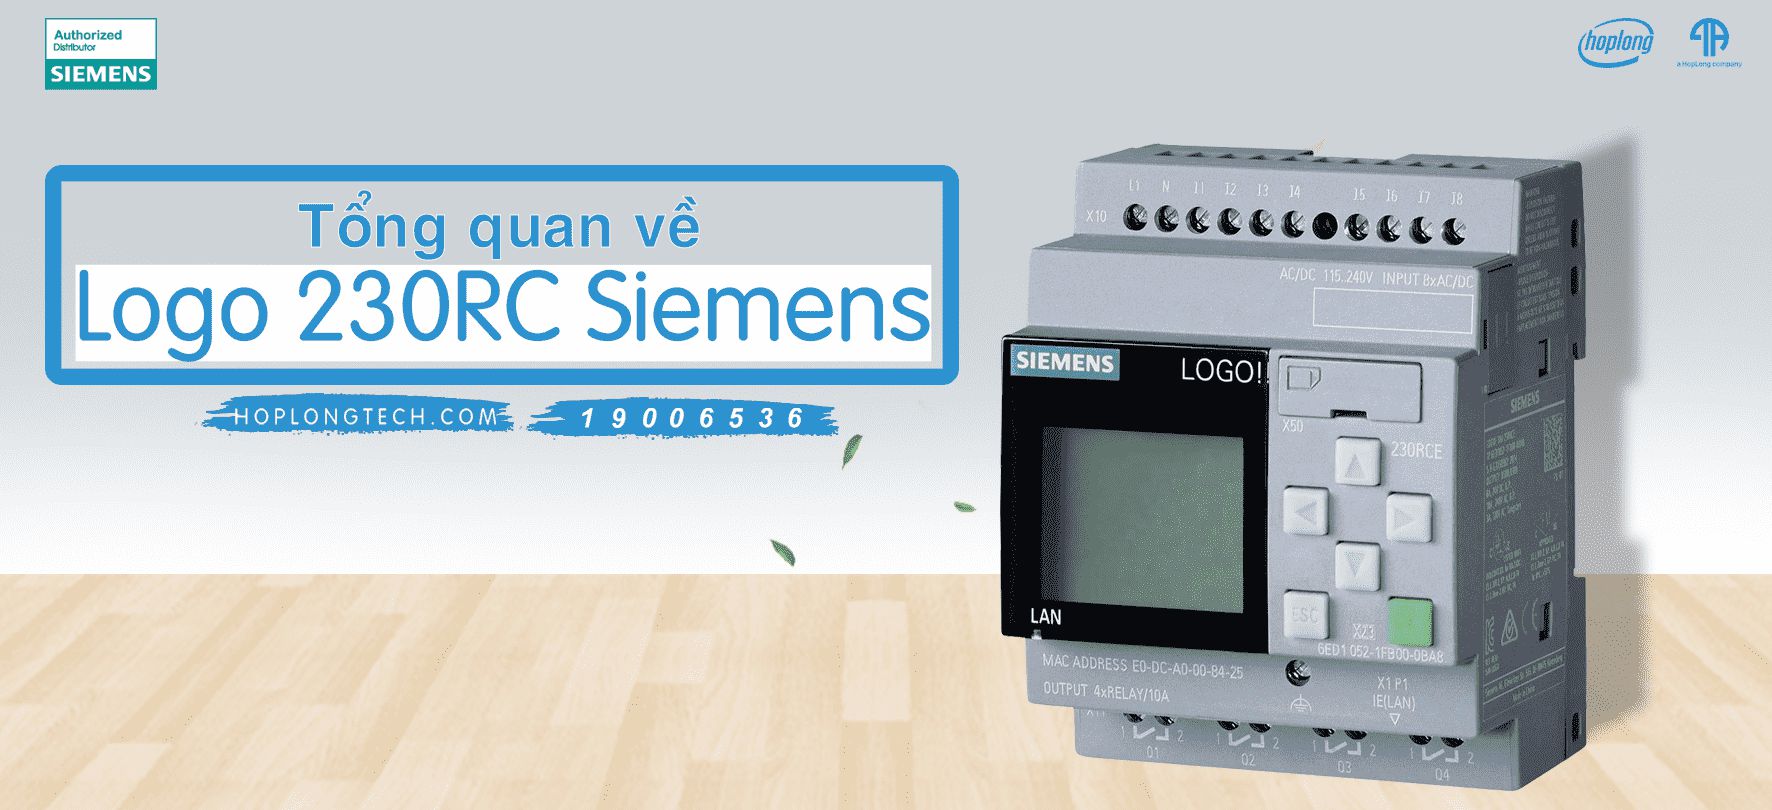 Cách lập trình PLC LOGO 230RC Siemens như thế nào?
